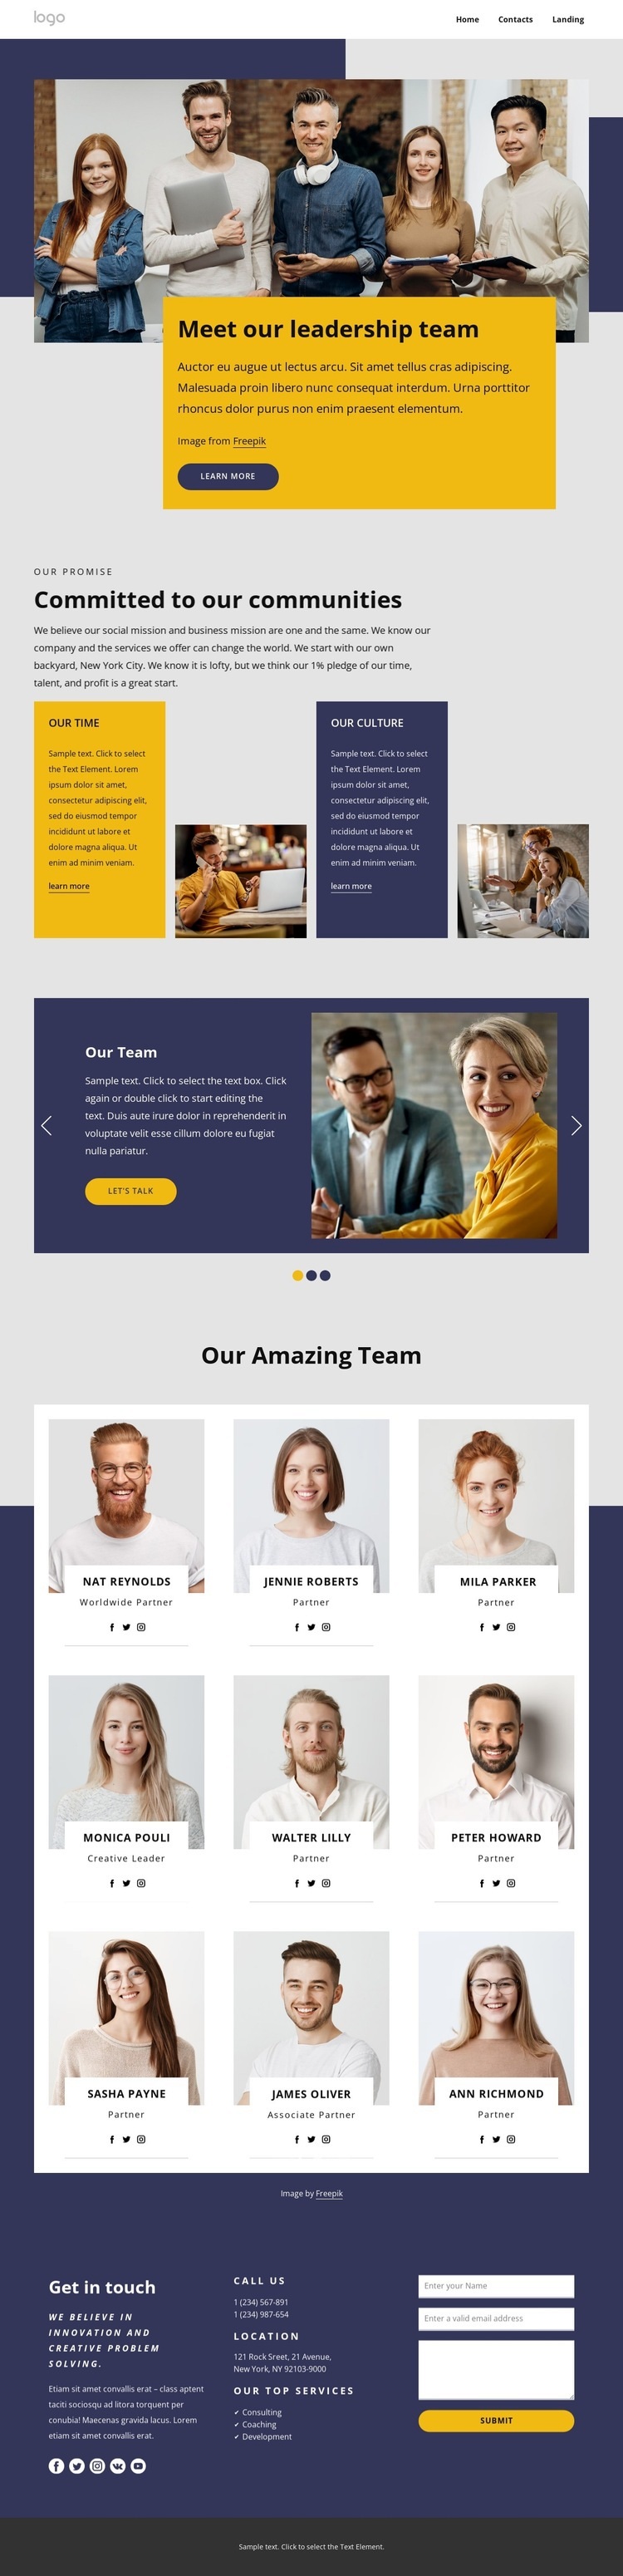 Meet our leadership team Homepage Design